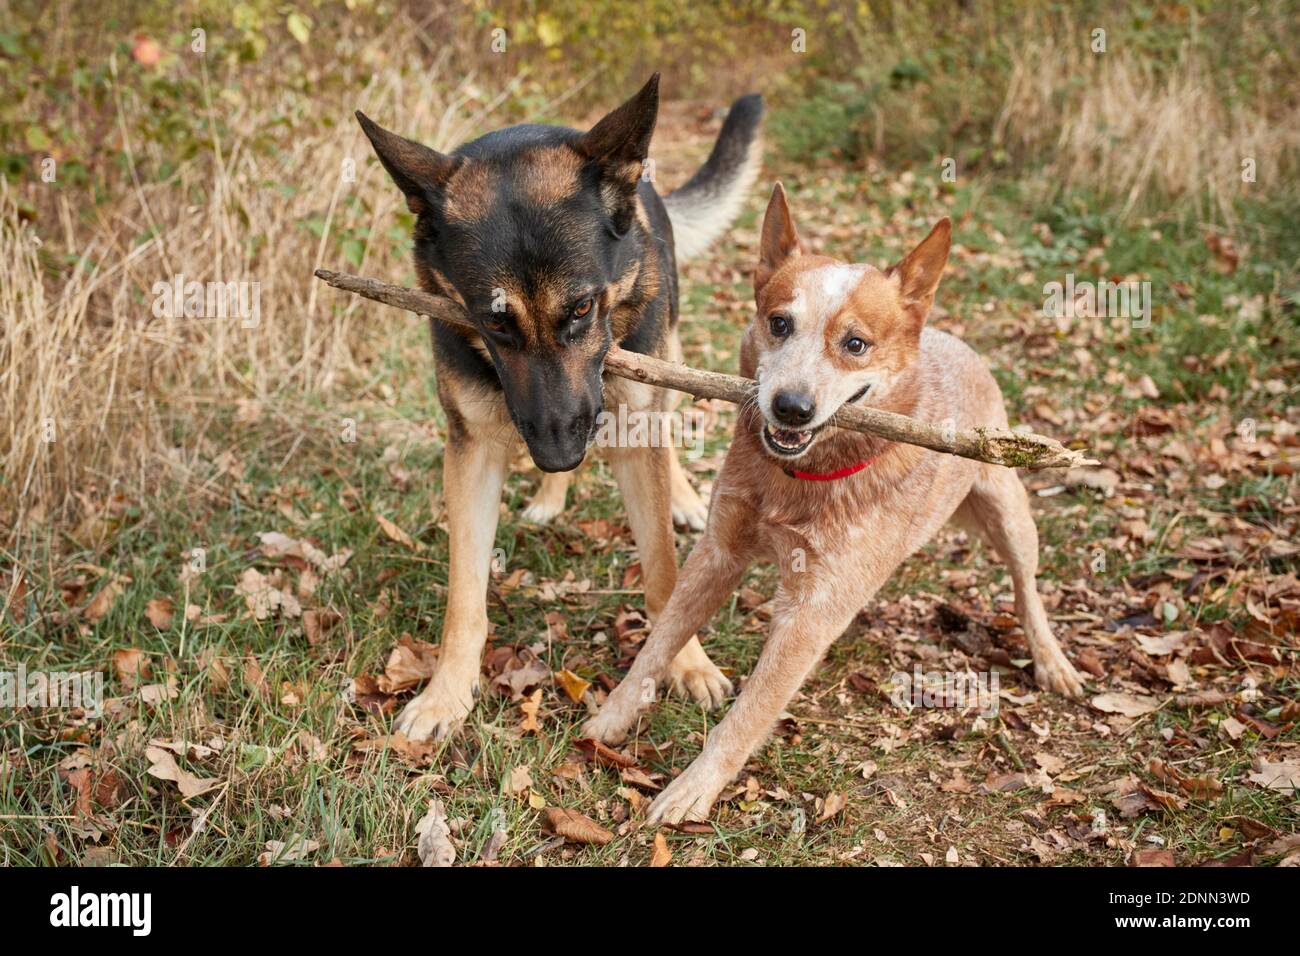 Pastore tedesco, cane di bestiame alsaziano e australiano. Due cani adulti che tirano su un bastone. Germania. Foto Stock